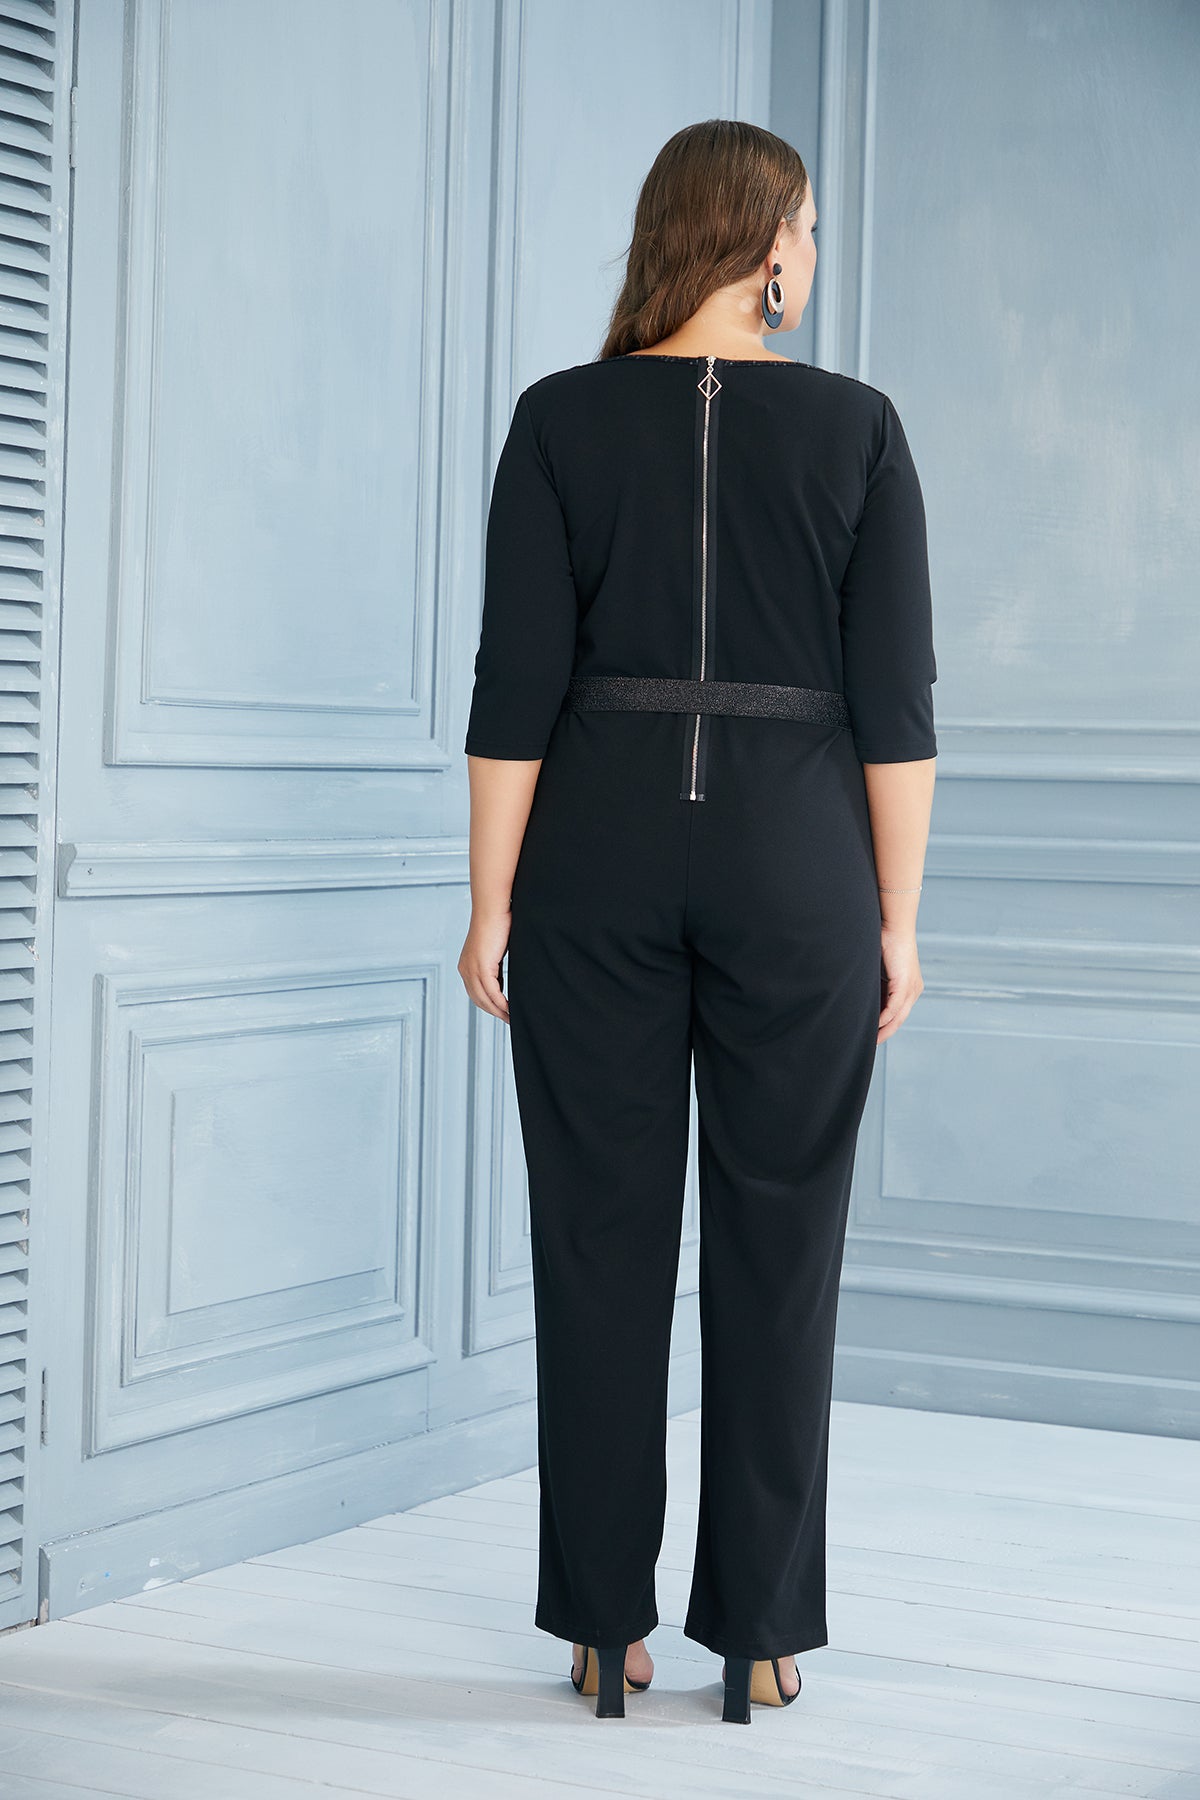 Μαύρη κομψή ολόσωμη φόρμα με φερμουάρ στην πλάτη - μεγάλα μεγέθη 